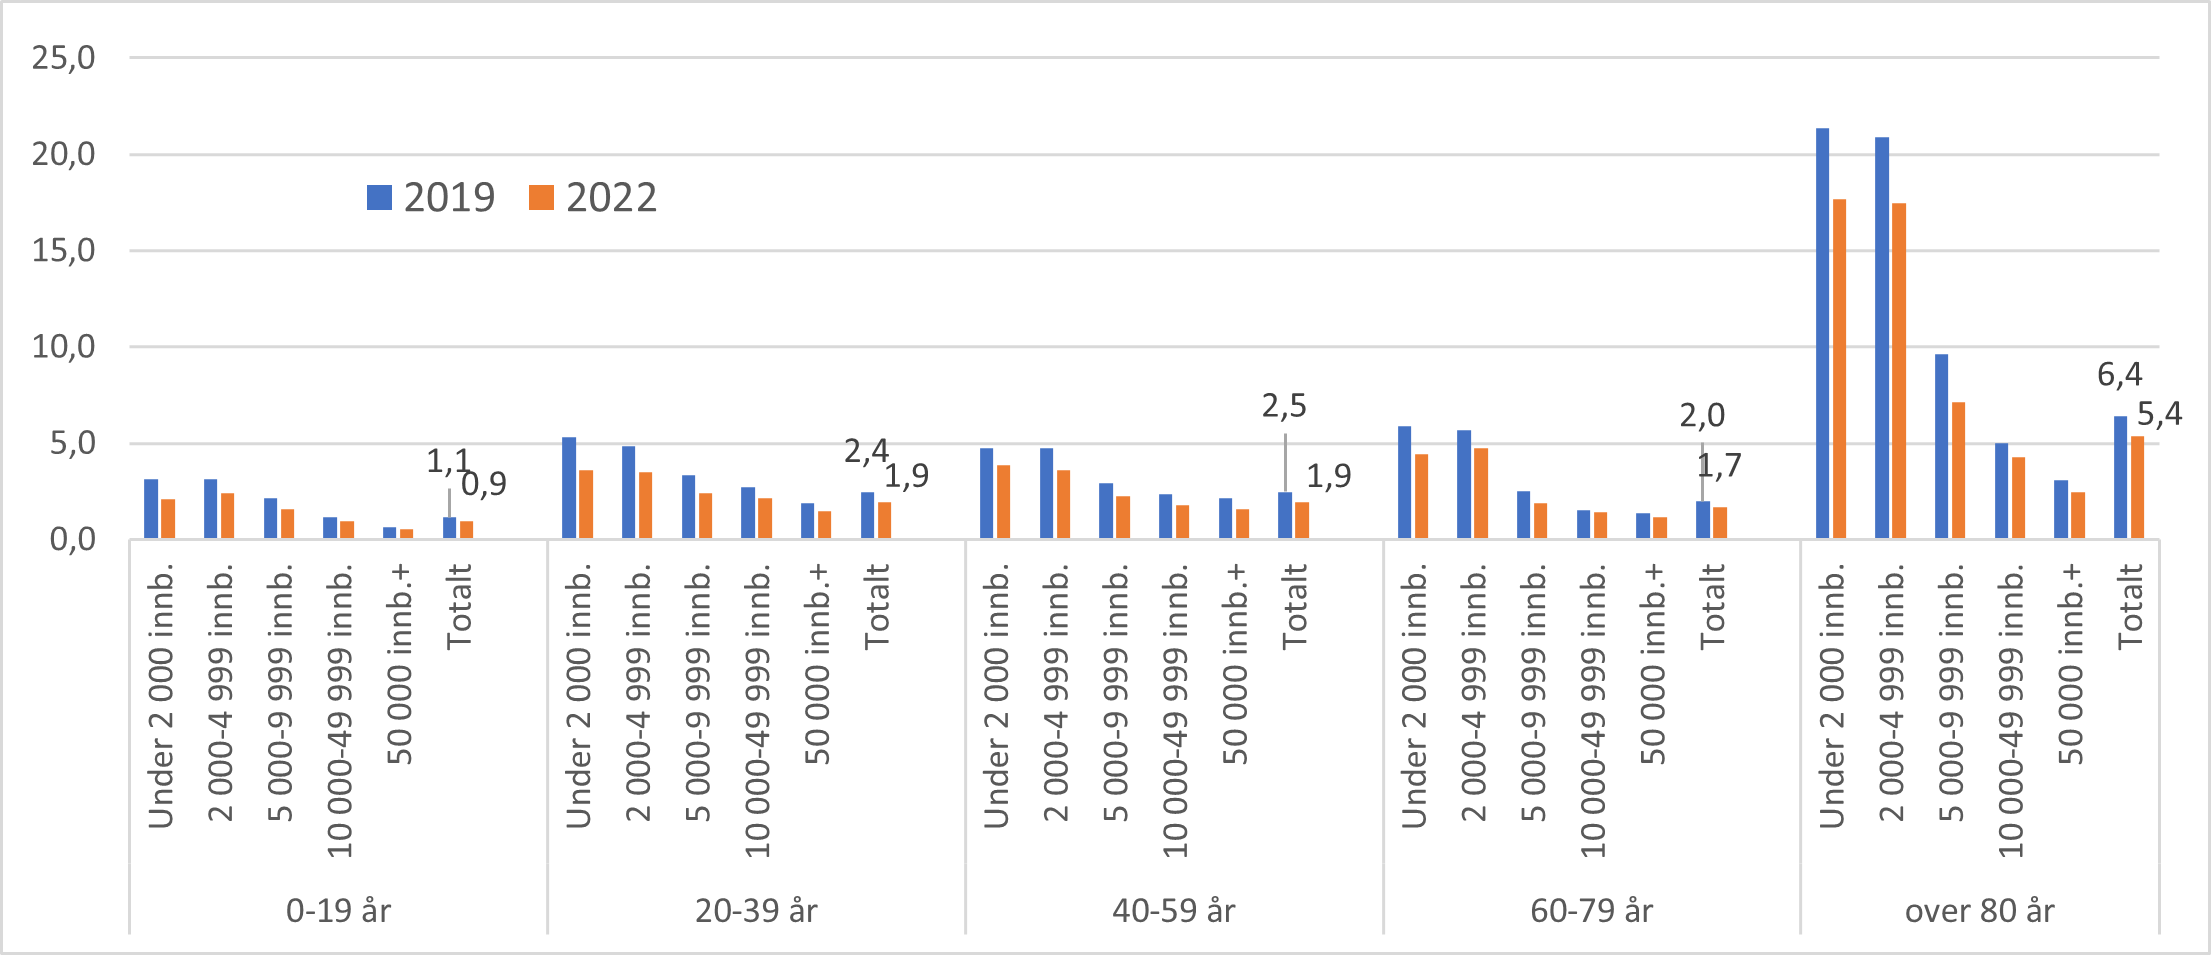 Antall tverrfaglige samarbeidsmøter per 100 innbygger for aldersgrupper og kommunestørrelse, 2019 og 2022.